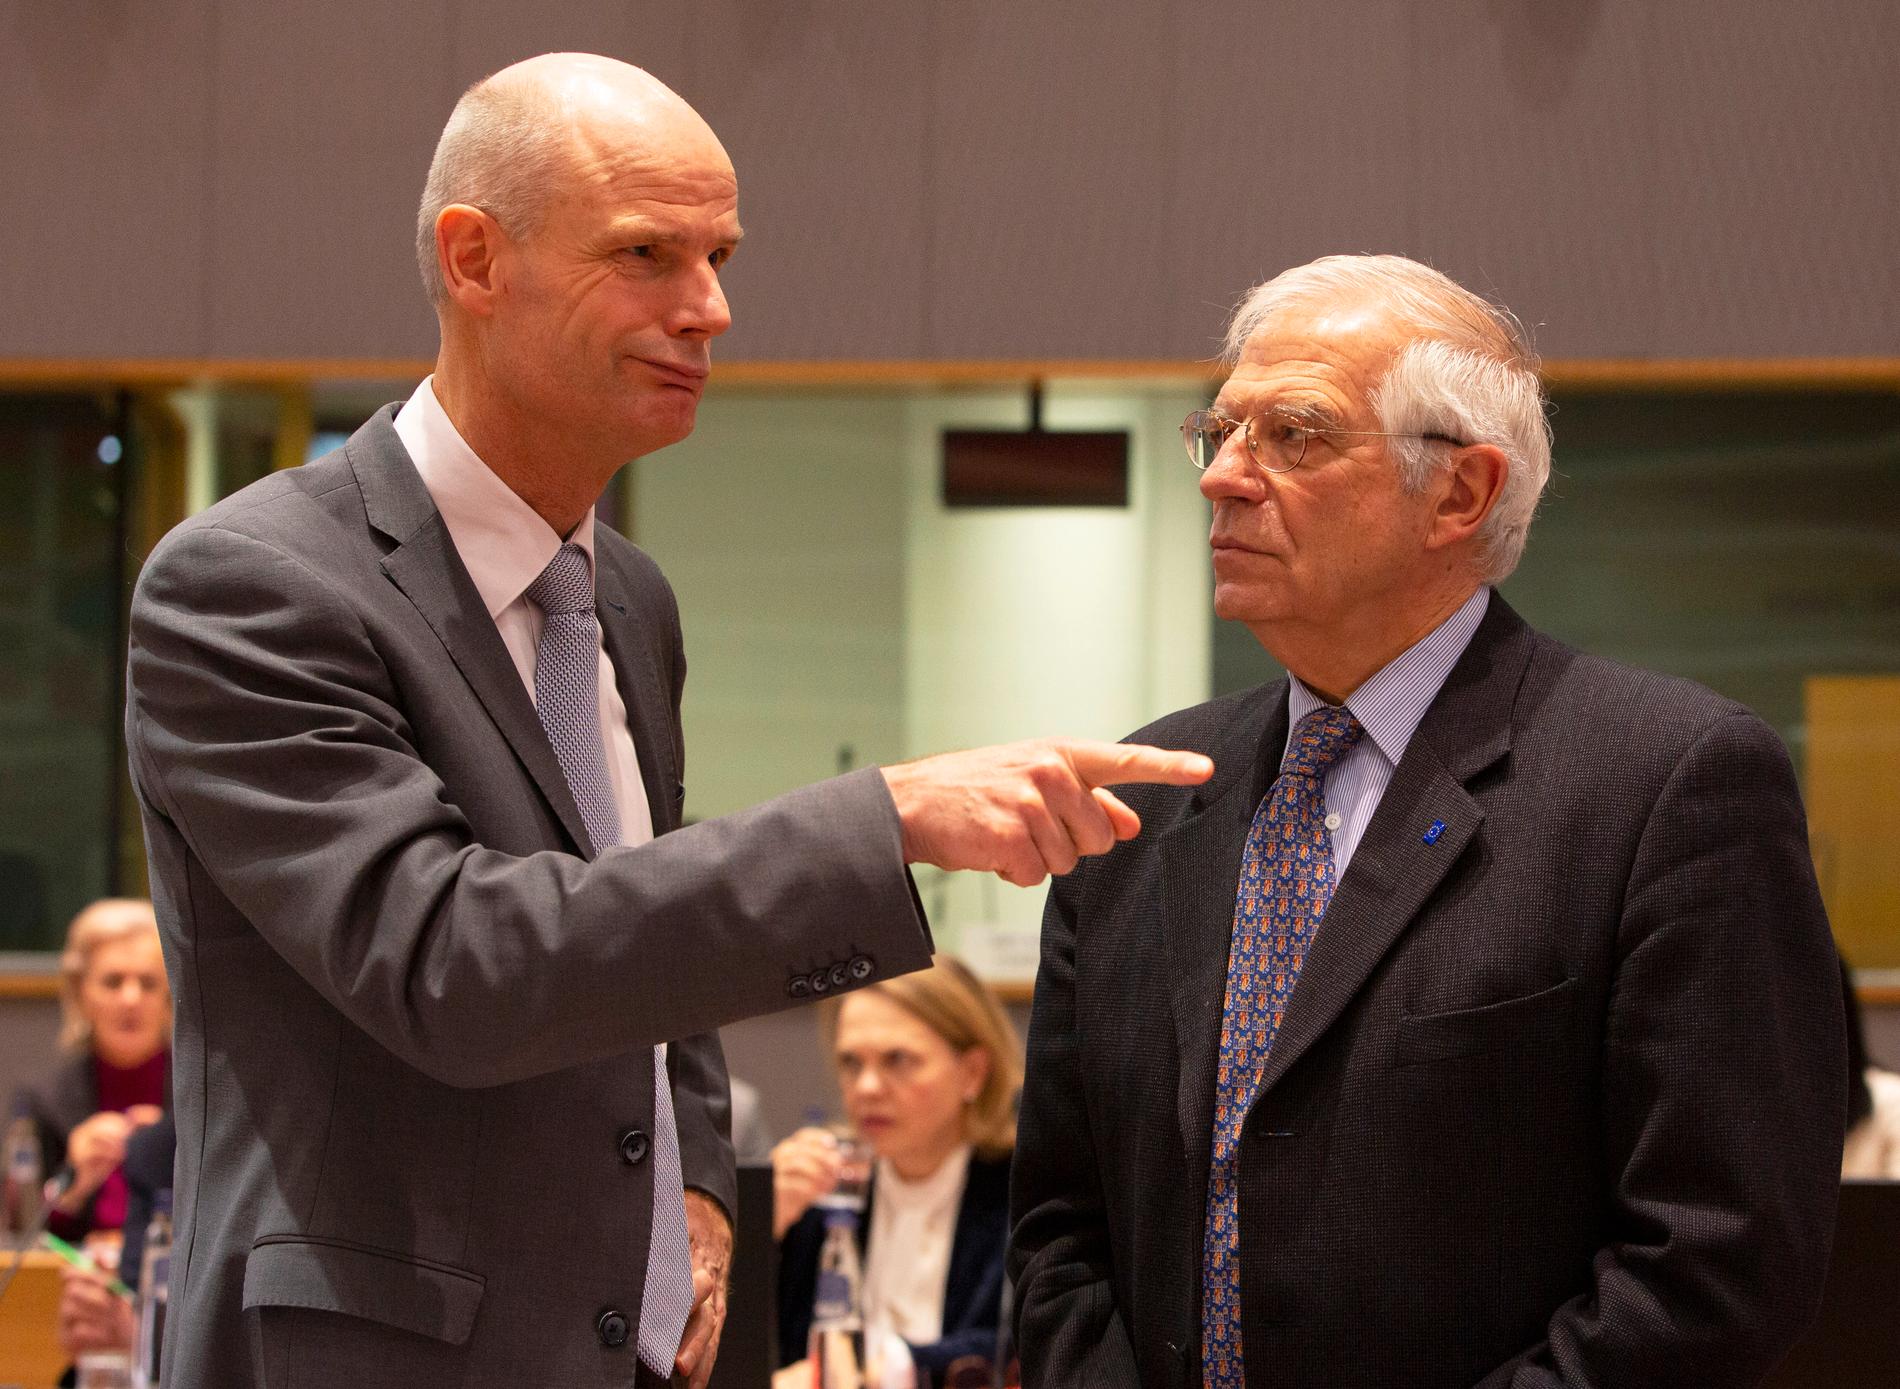 EU:s nye utrikeschef Josep Borrell (till höger) tillsammans med Nederländernas utrikesminister Stef Blok.